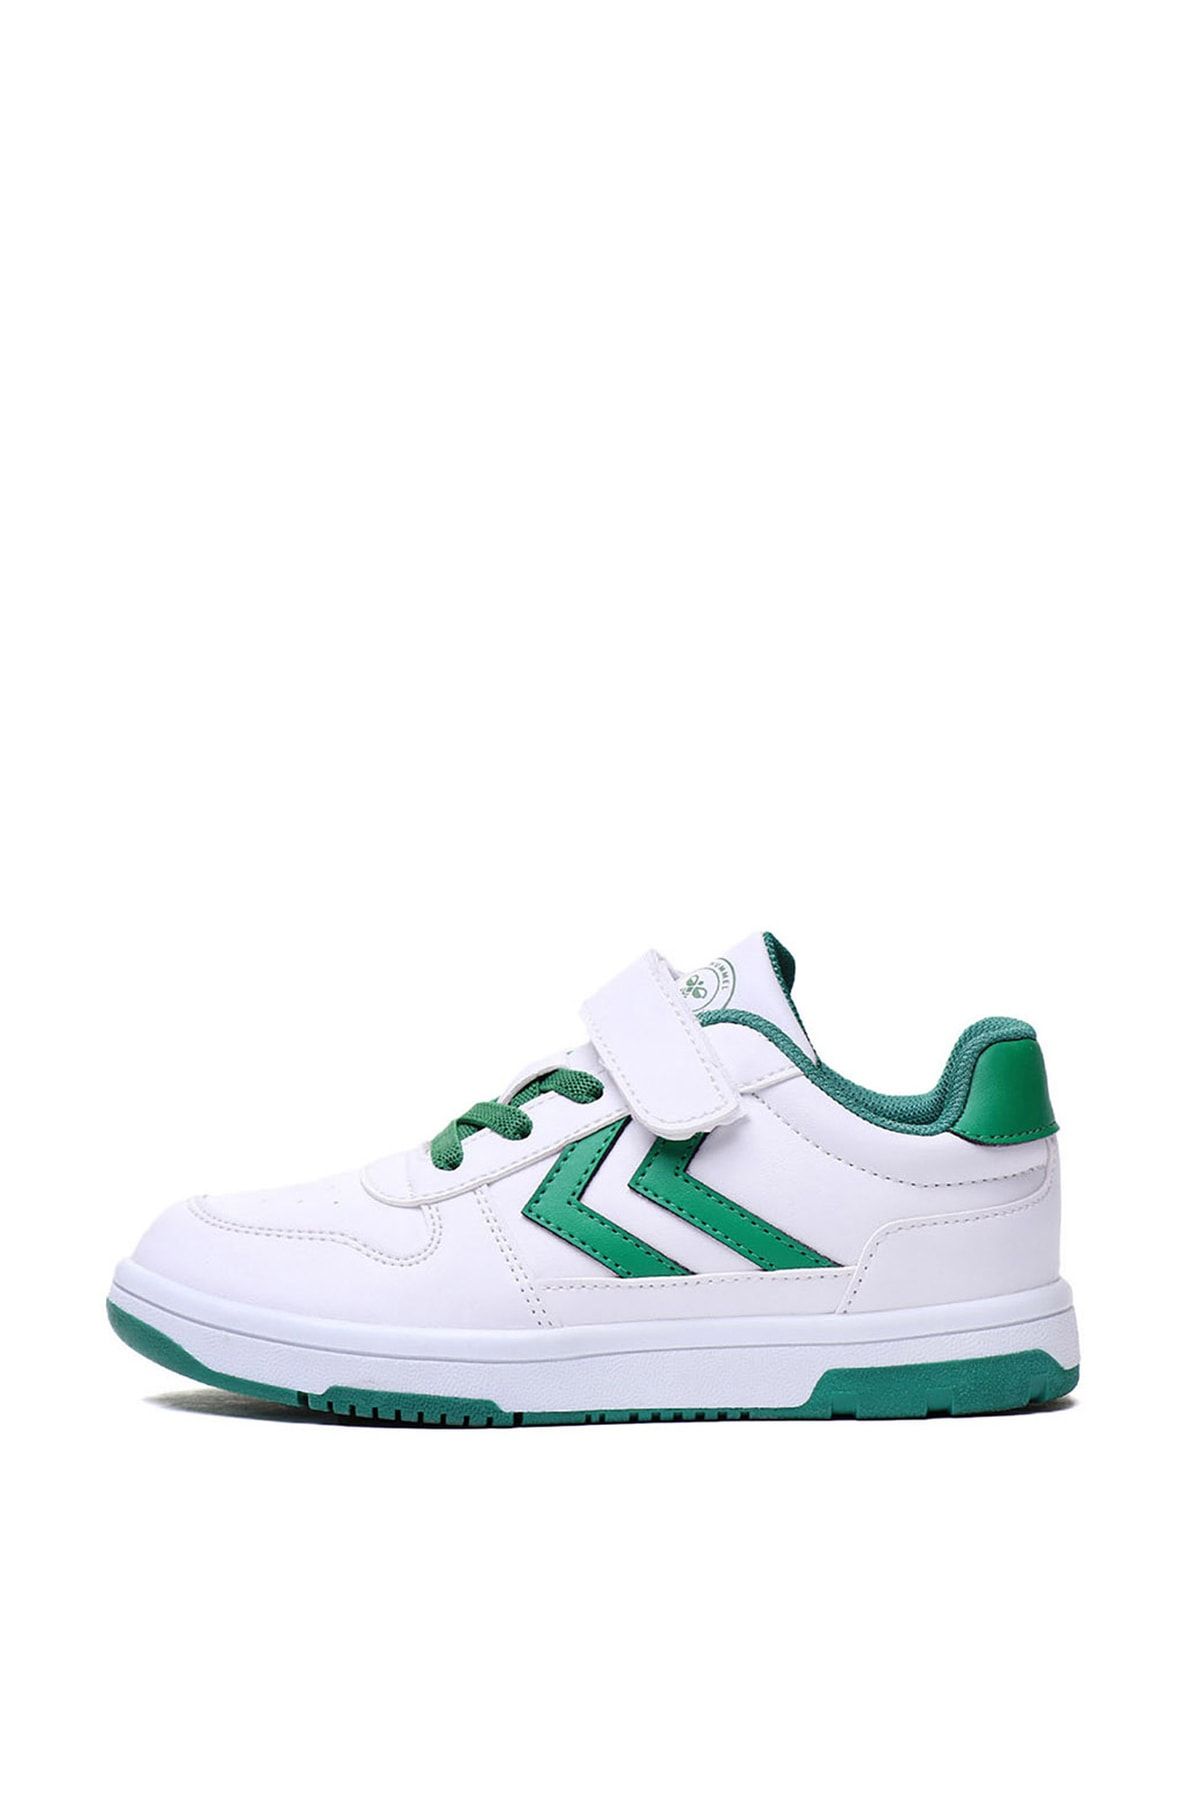 hummel Yeşil - Beyaz Erkek Çocuk Yürüyüş Ayakkabısı 900113-9995 Hml Oıl Mono Jr